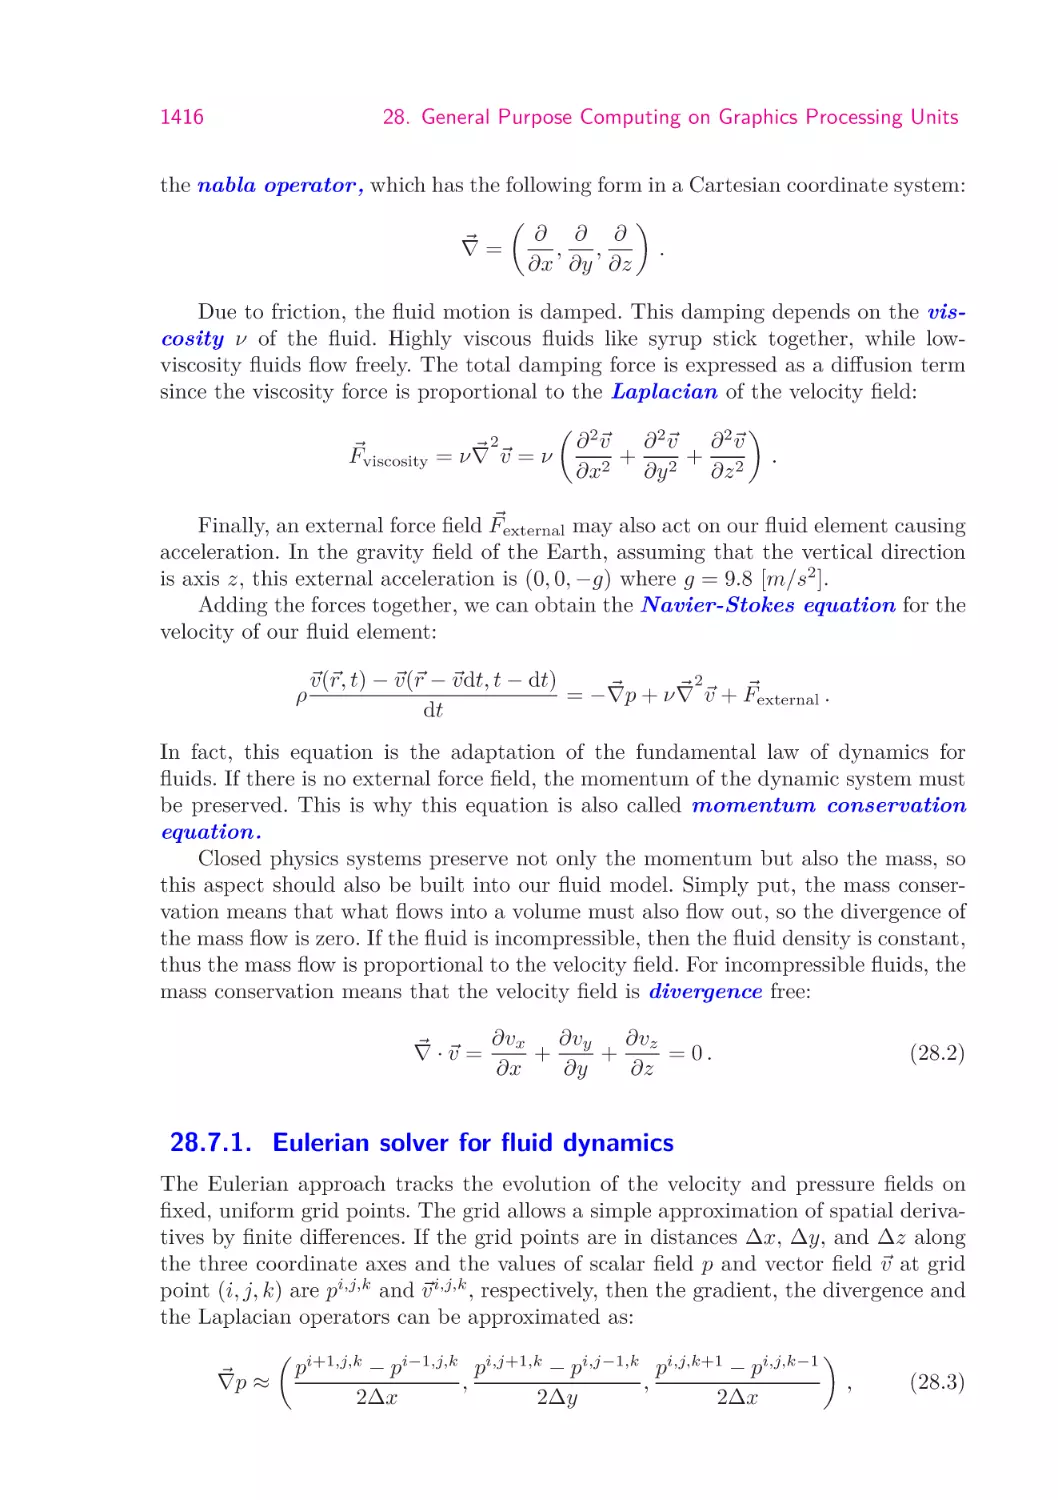 28.7.1.  Eulerian solver for fluid dynamics